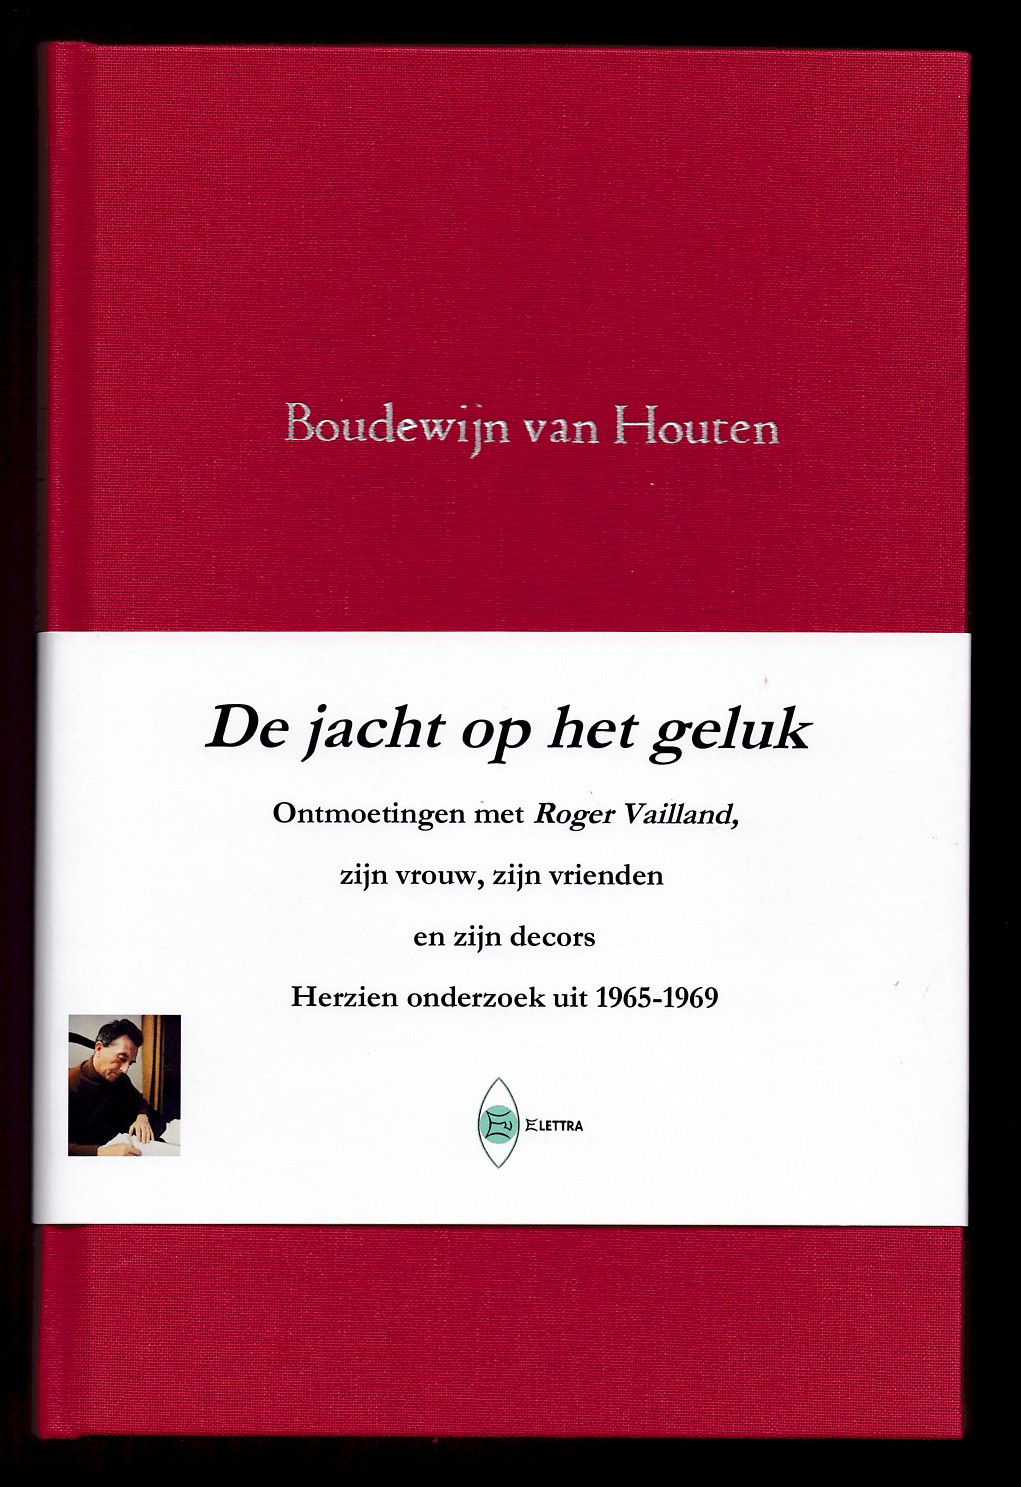 Houten, Boudewijn van - De jacht op het geluk, Ontmoetingen met Roger Vailland, zijn vrouw, zijn vrienden en zijn decors, Herzien onderzoek uit 1965-1969